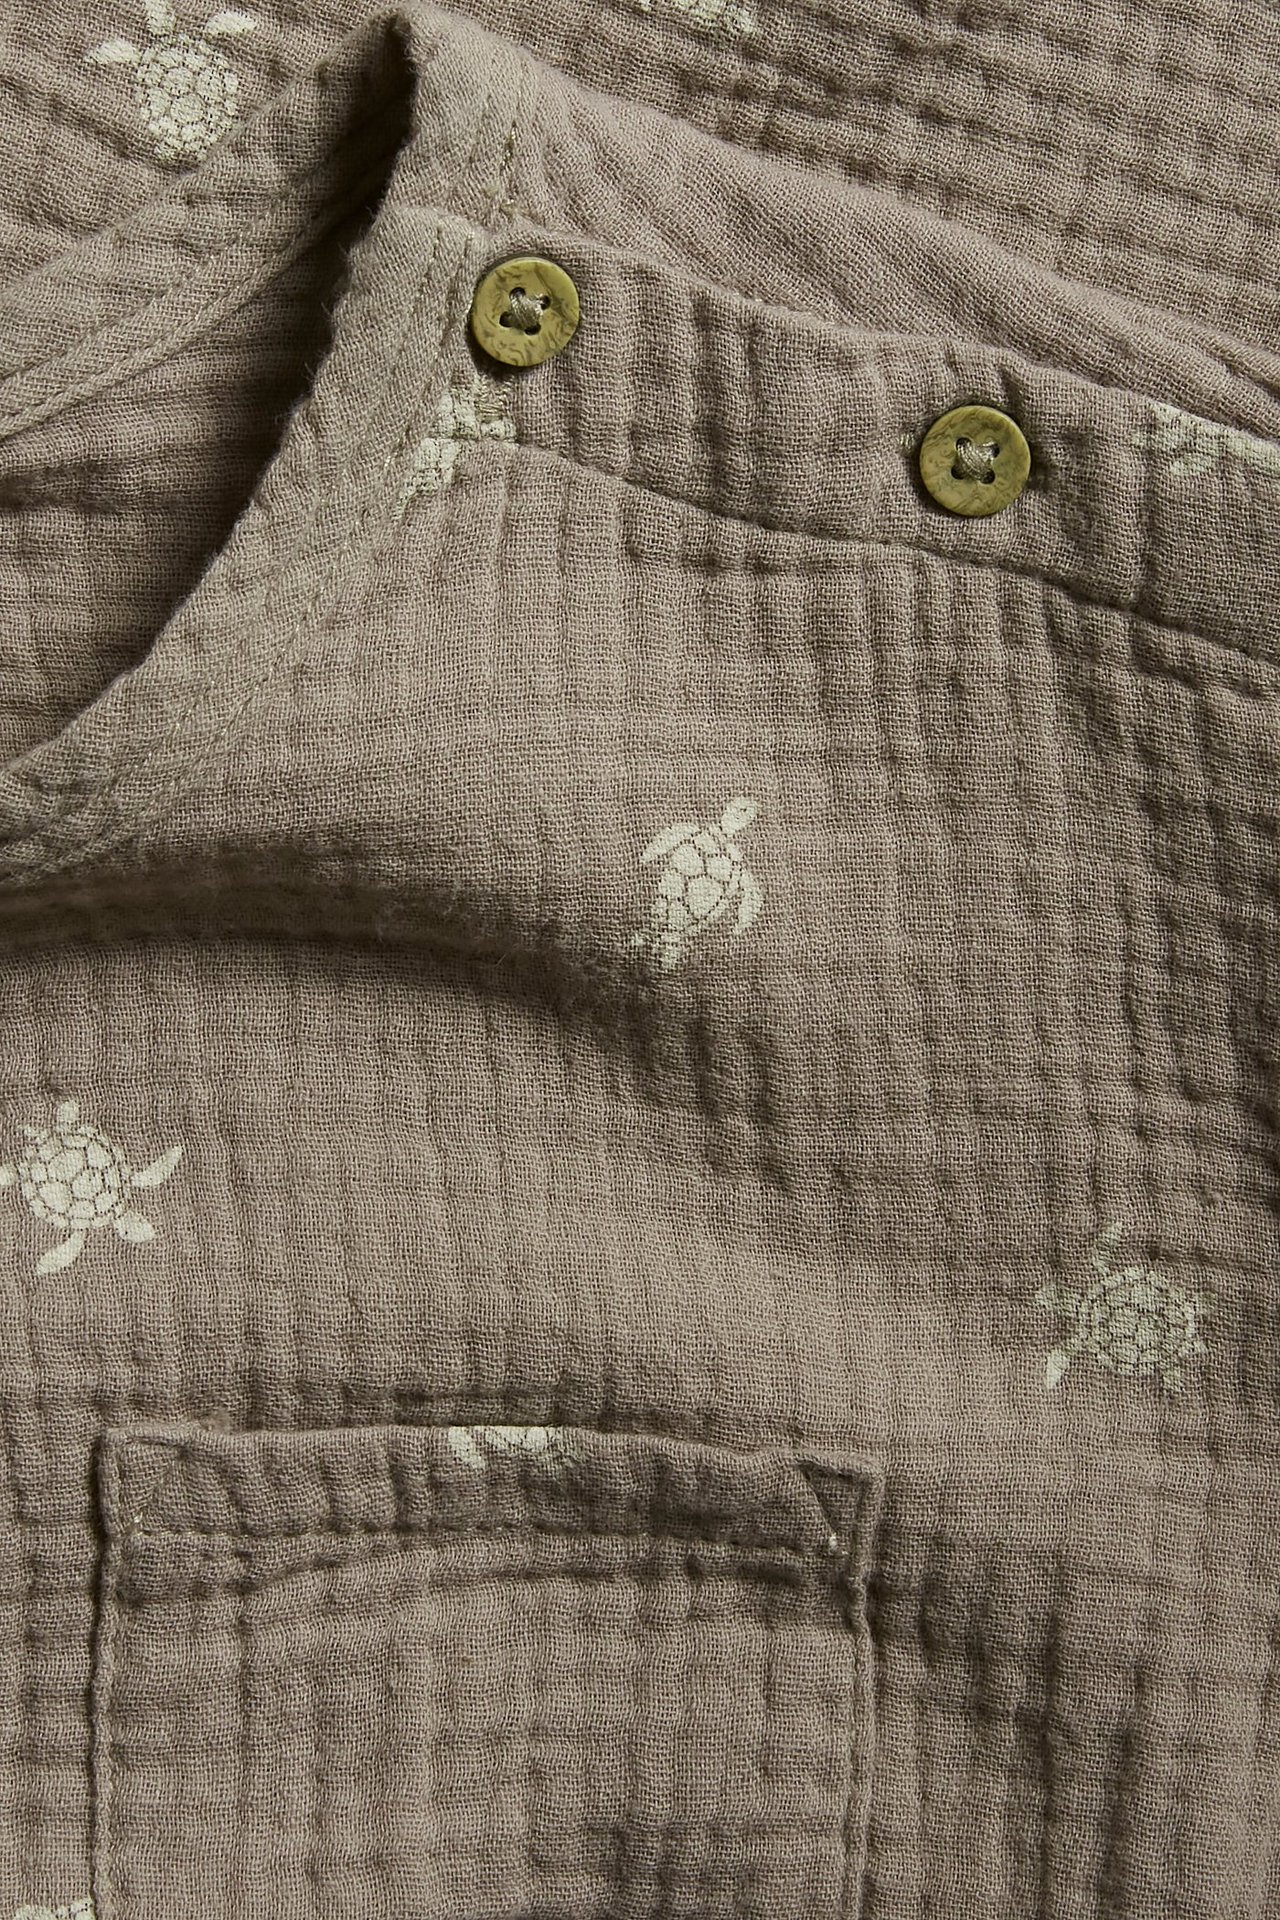 Mønstret t-skjorte Brun - null - 1